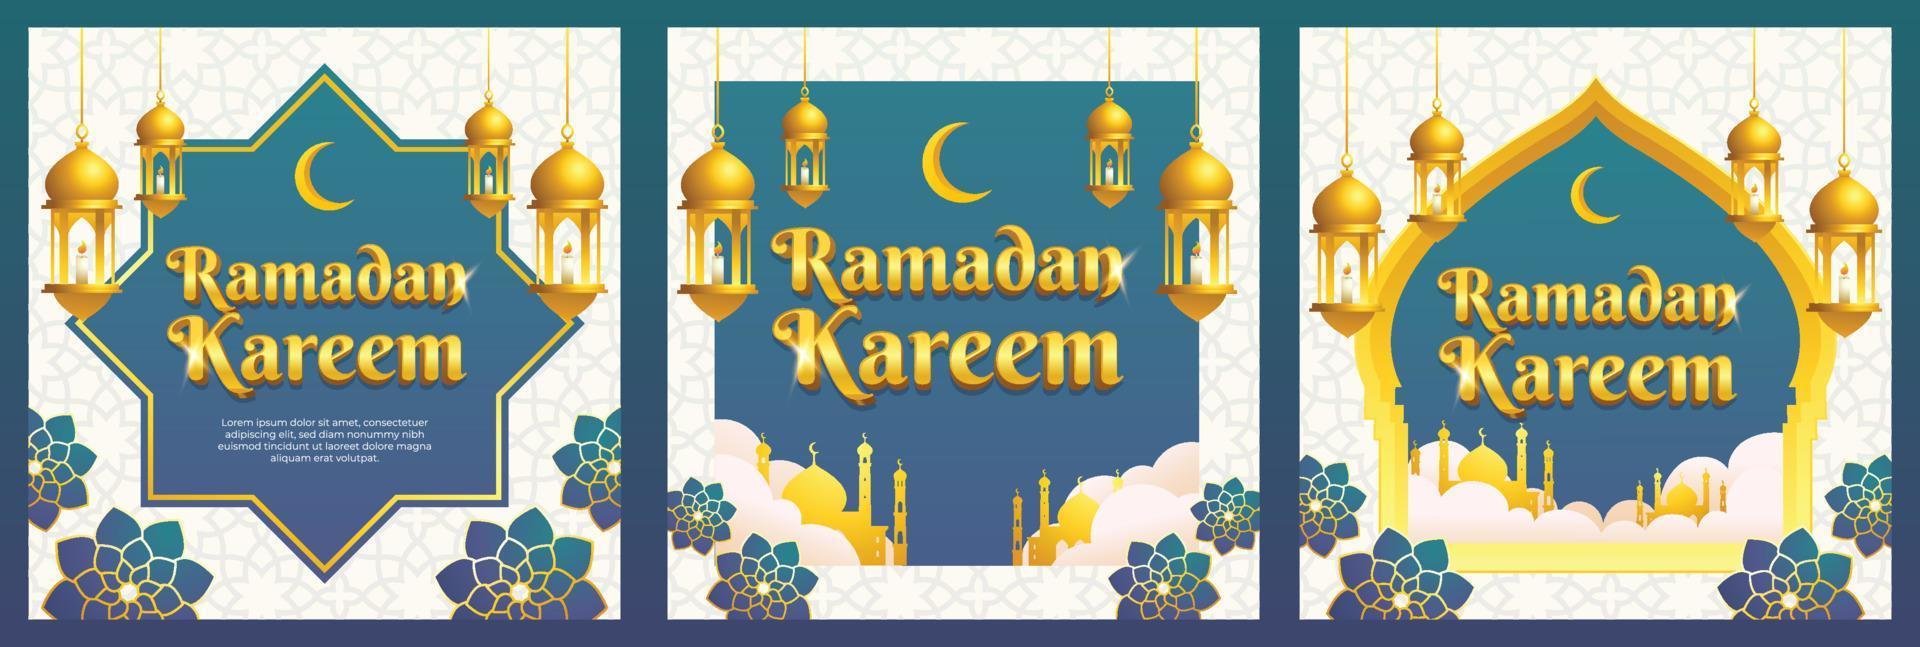 blå guld islamisk stil ramadan kareem gratulationskort, bakgrund och fyrkantig banner malluppsättning vektor